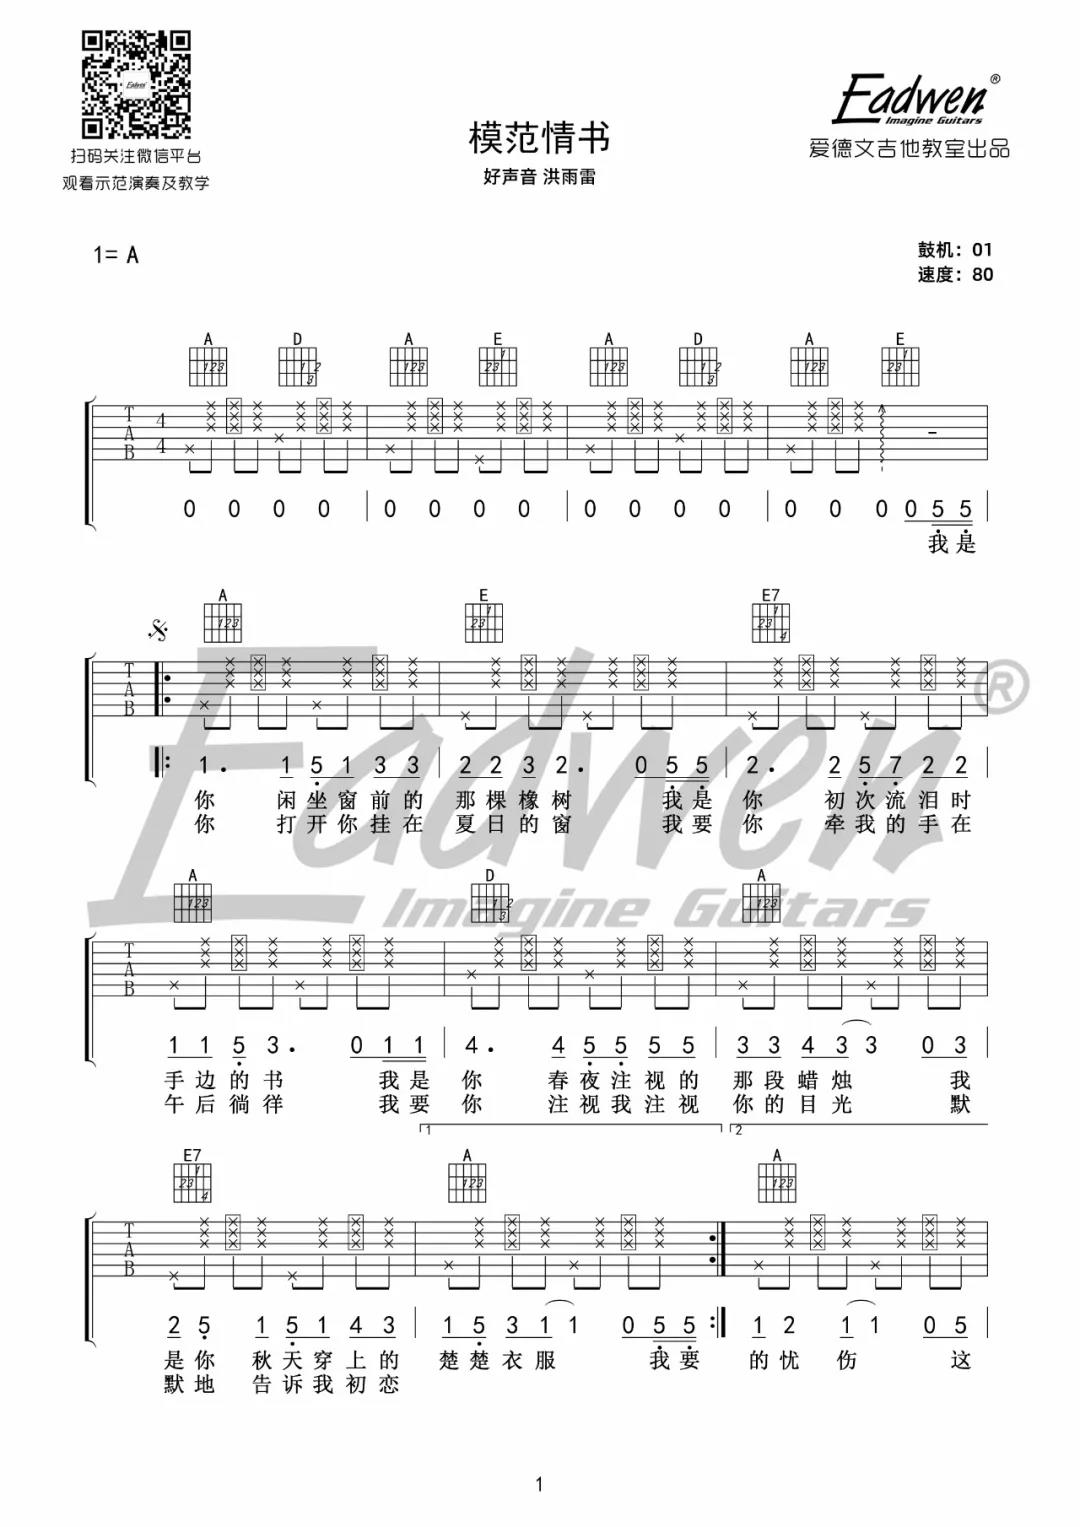 洪雨雷《模范情书》吉他谱(A调)-Guitar Music Score